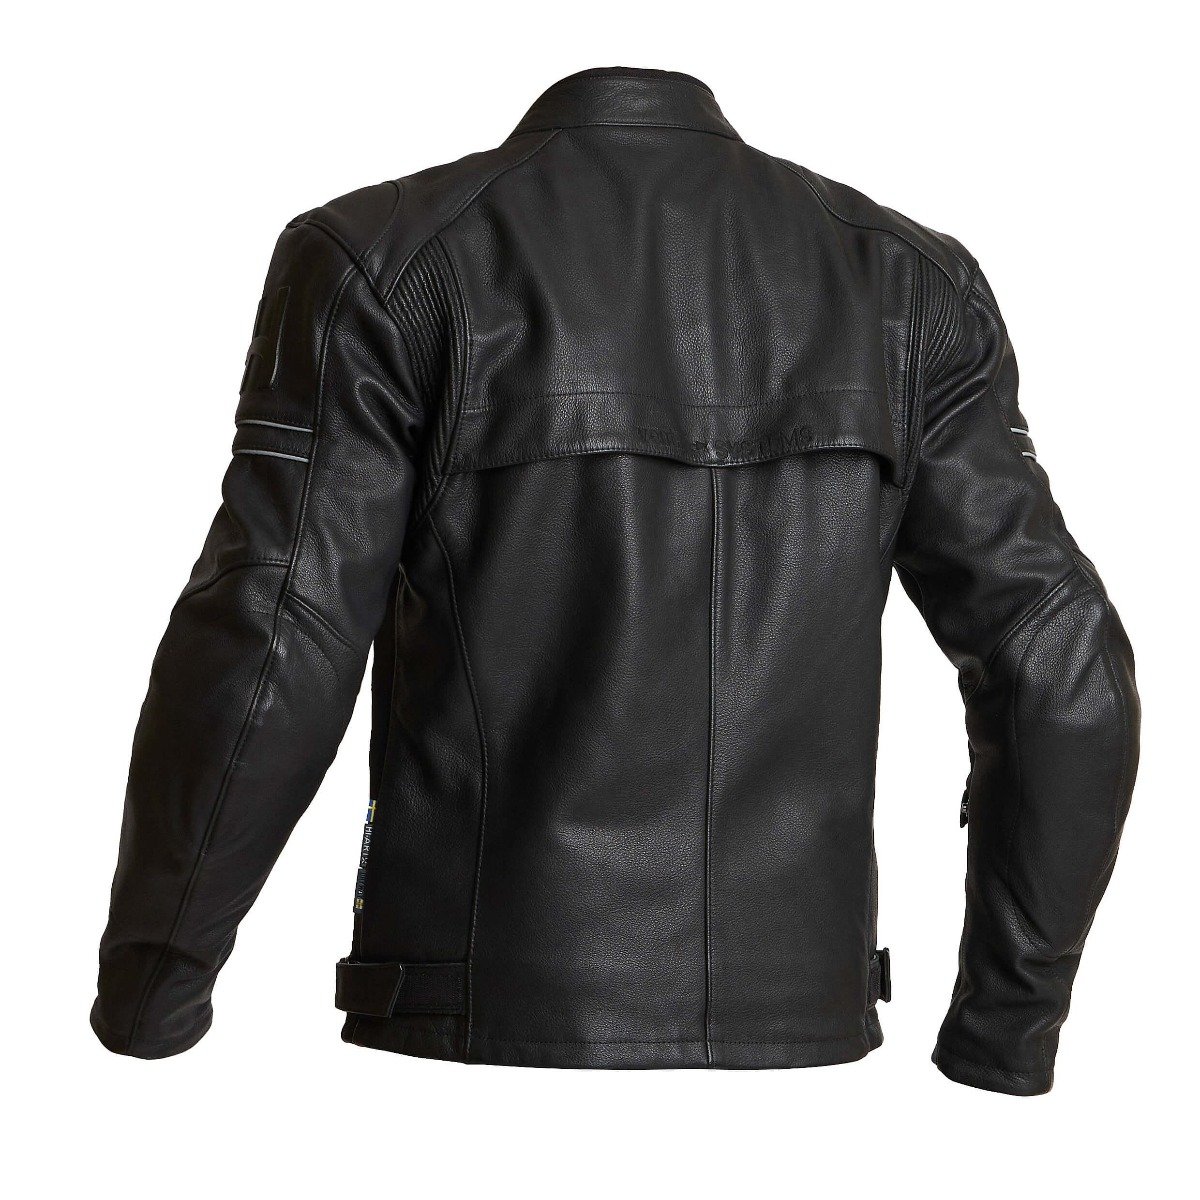 Image of Halvarssons Idre Jacket Black Size 50 EN